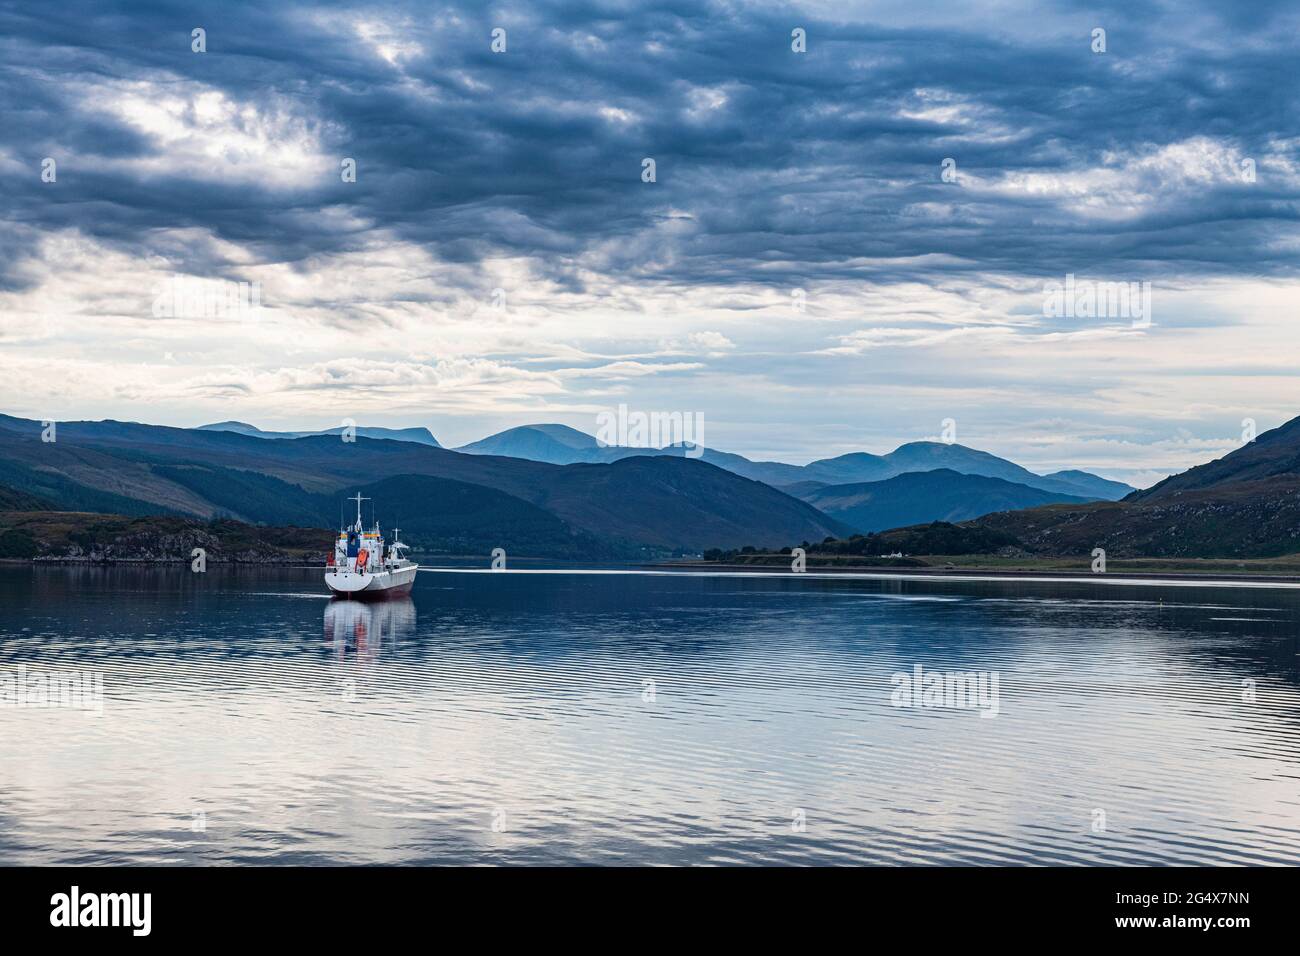 Royaume-Uni, Écosse, Ullapool, nuages sur un seul bateau de pêche naviguant dans la baie des Highlands écossais Banque D'Images